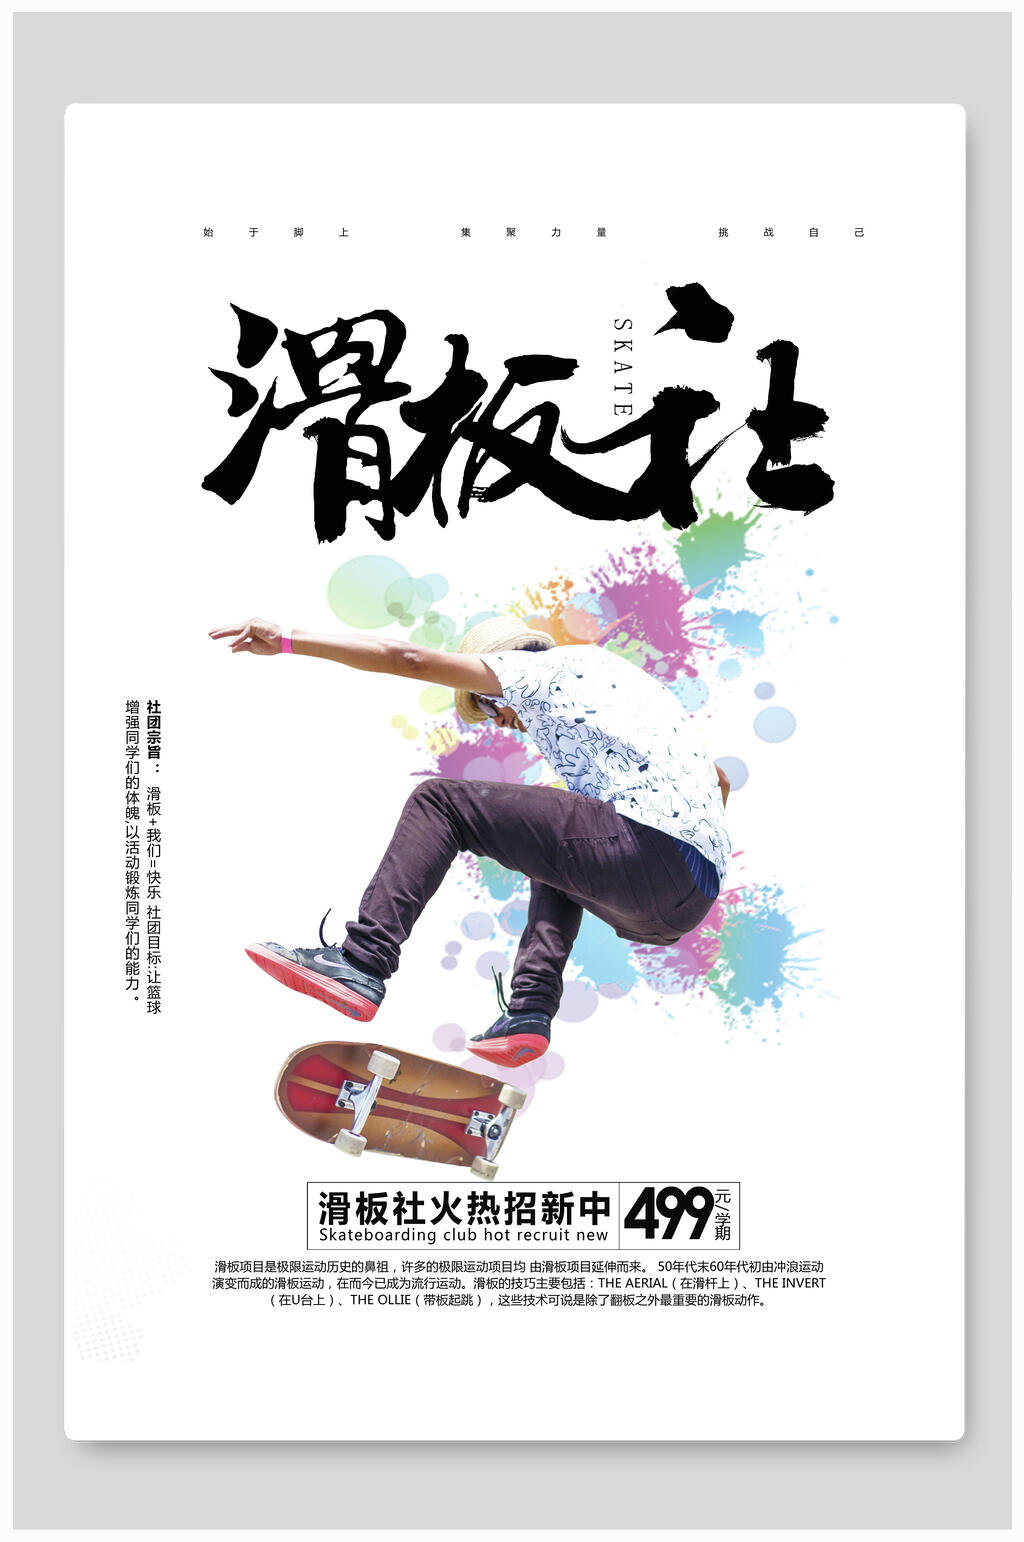 滑板社团招新海报英文图片